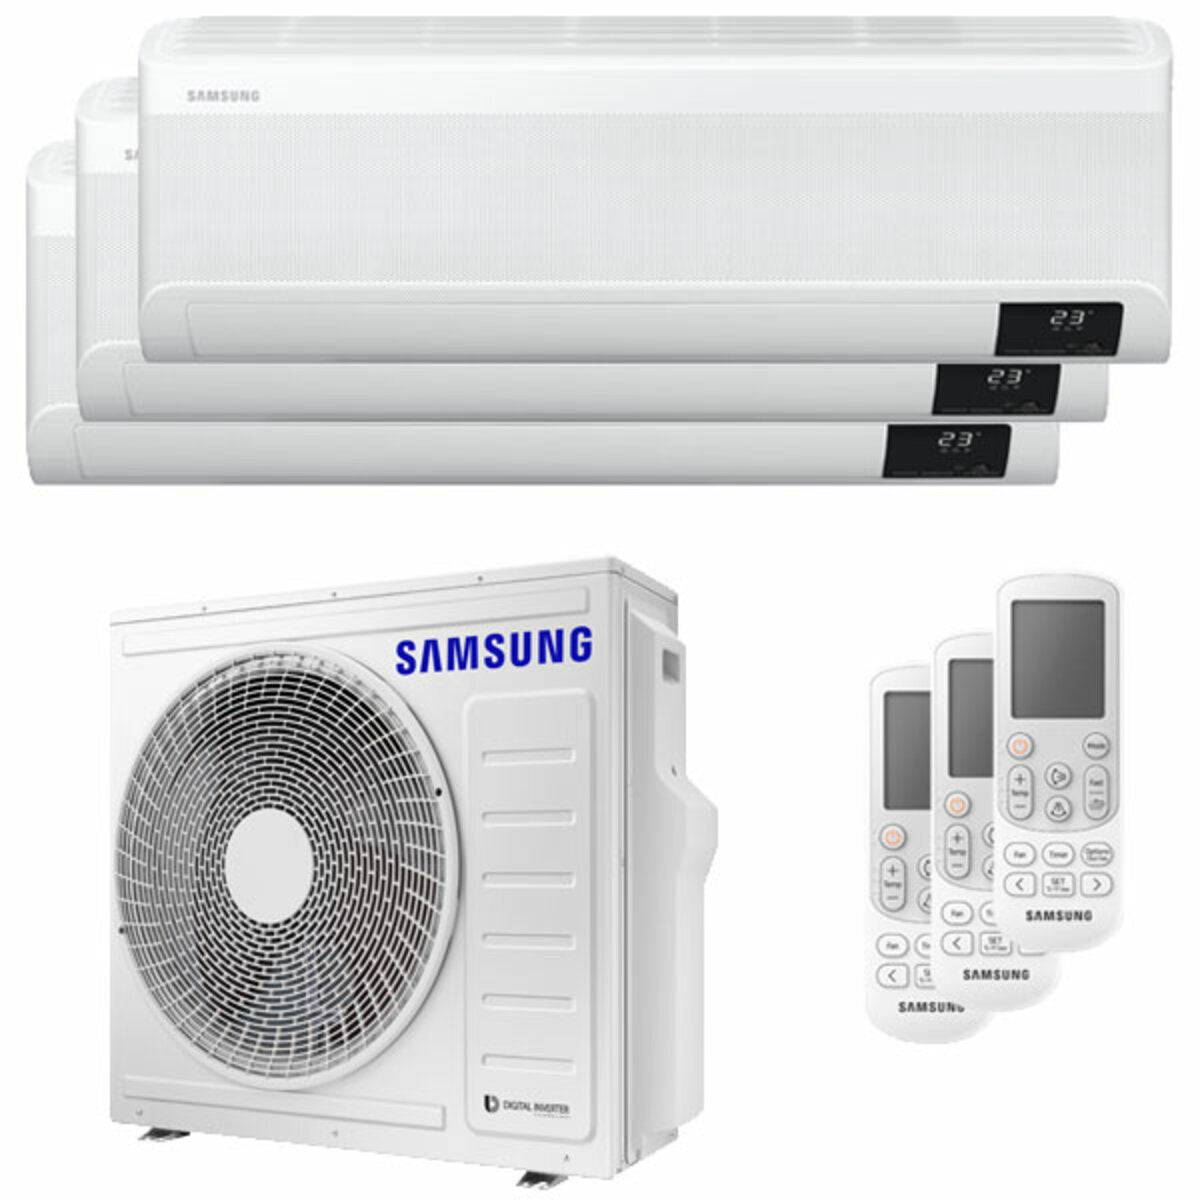 Samsung windfree Klimaanlage Avant Trial Split 12000 + 12000 + 12000 BTU Wechselrichter A++ WLAN Außengerät 6,8 kW